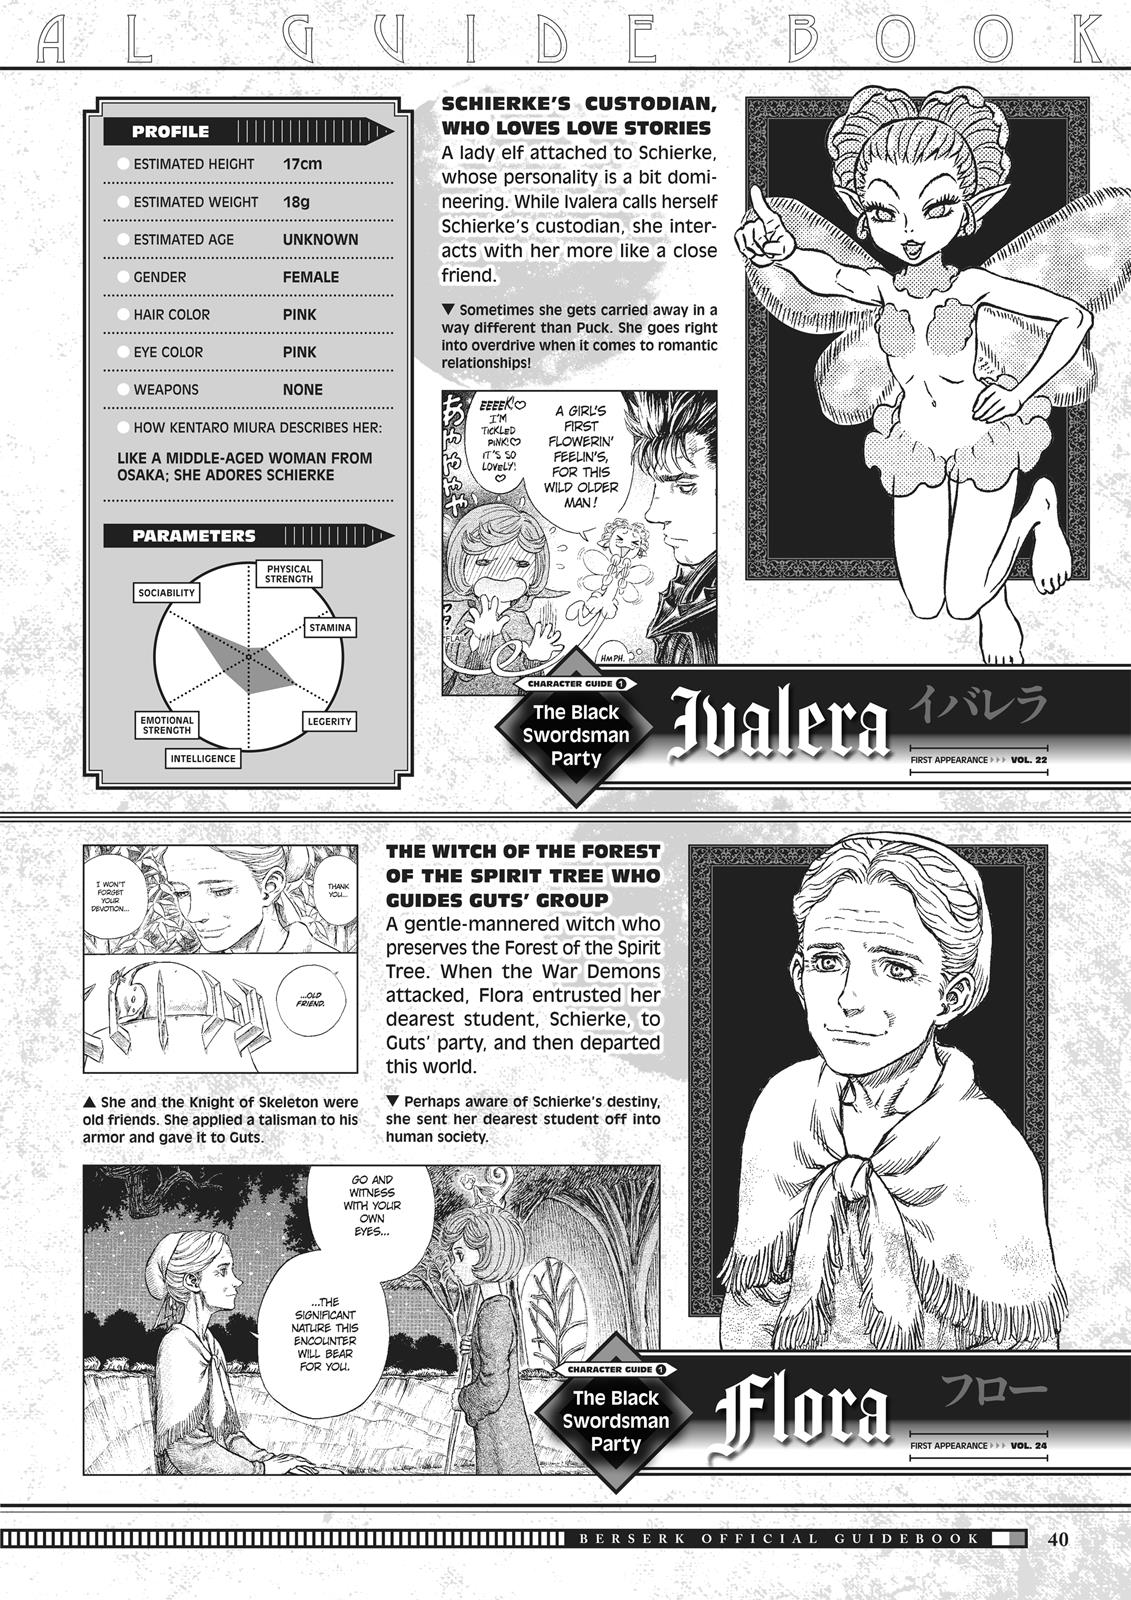 Berserk Manga Chapter 350.5 image 040